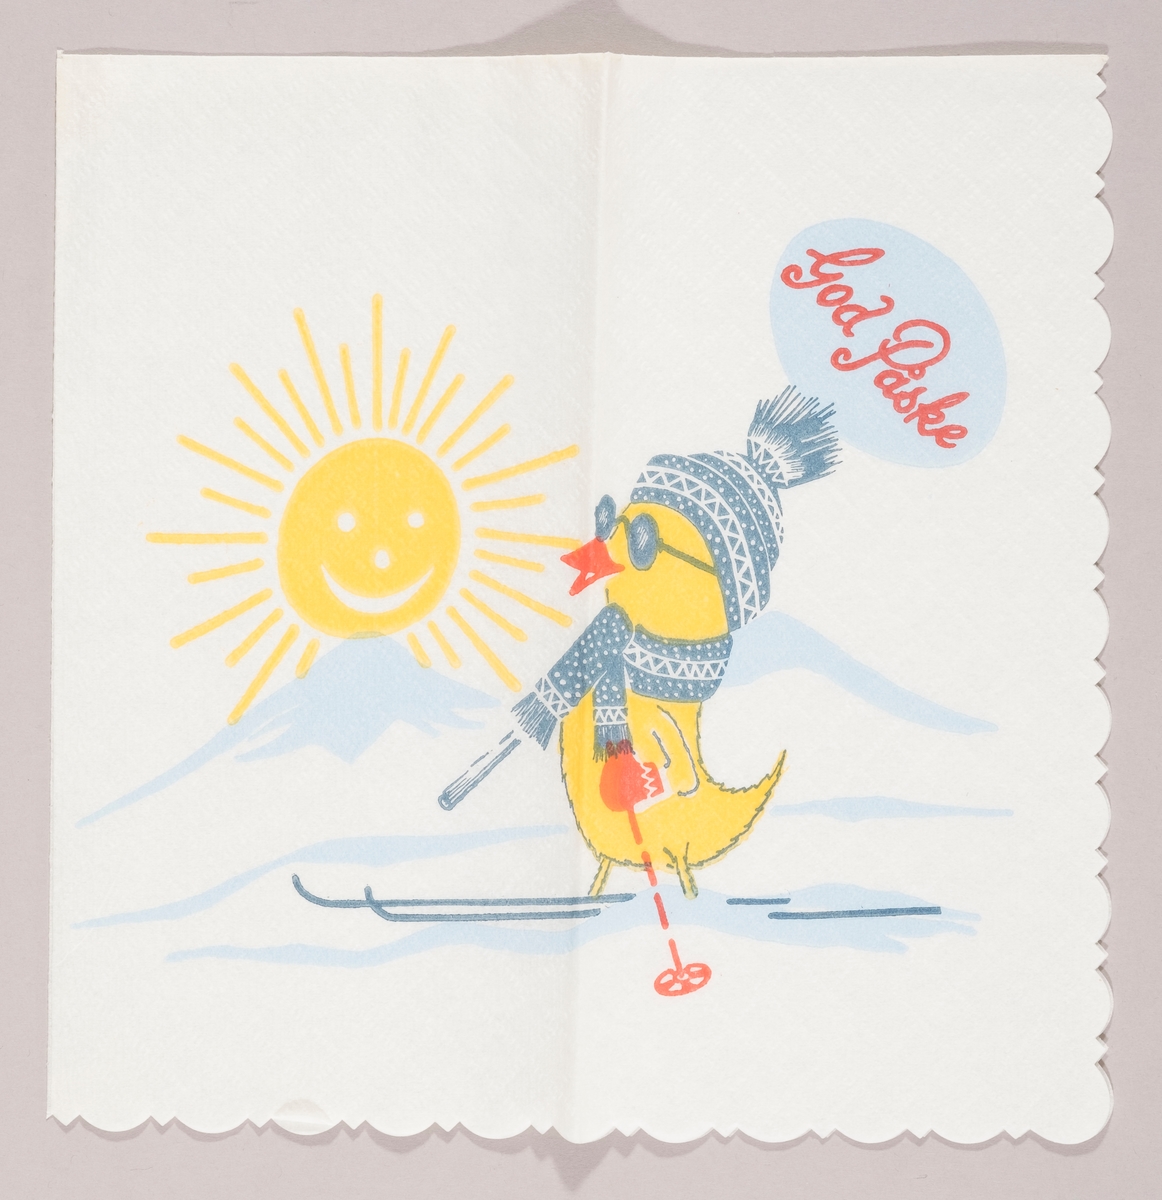 En kylling med mønstret topplue og halstørklede, votter, solbriller, ski og staver. En strålende sol over fjelltopper med snø. Påskehilsen.